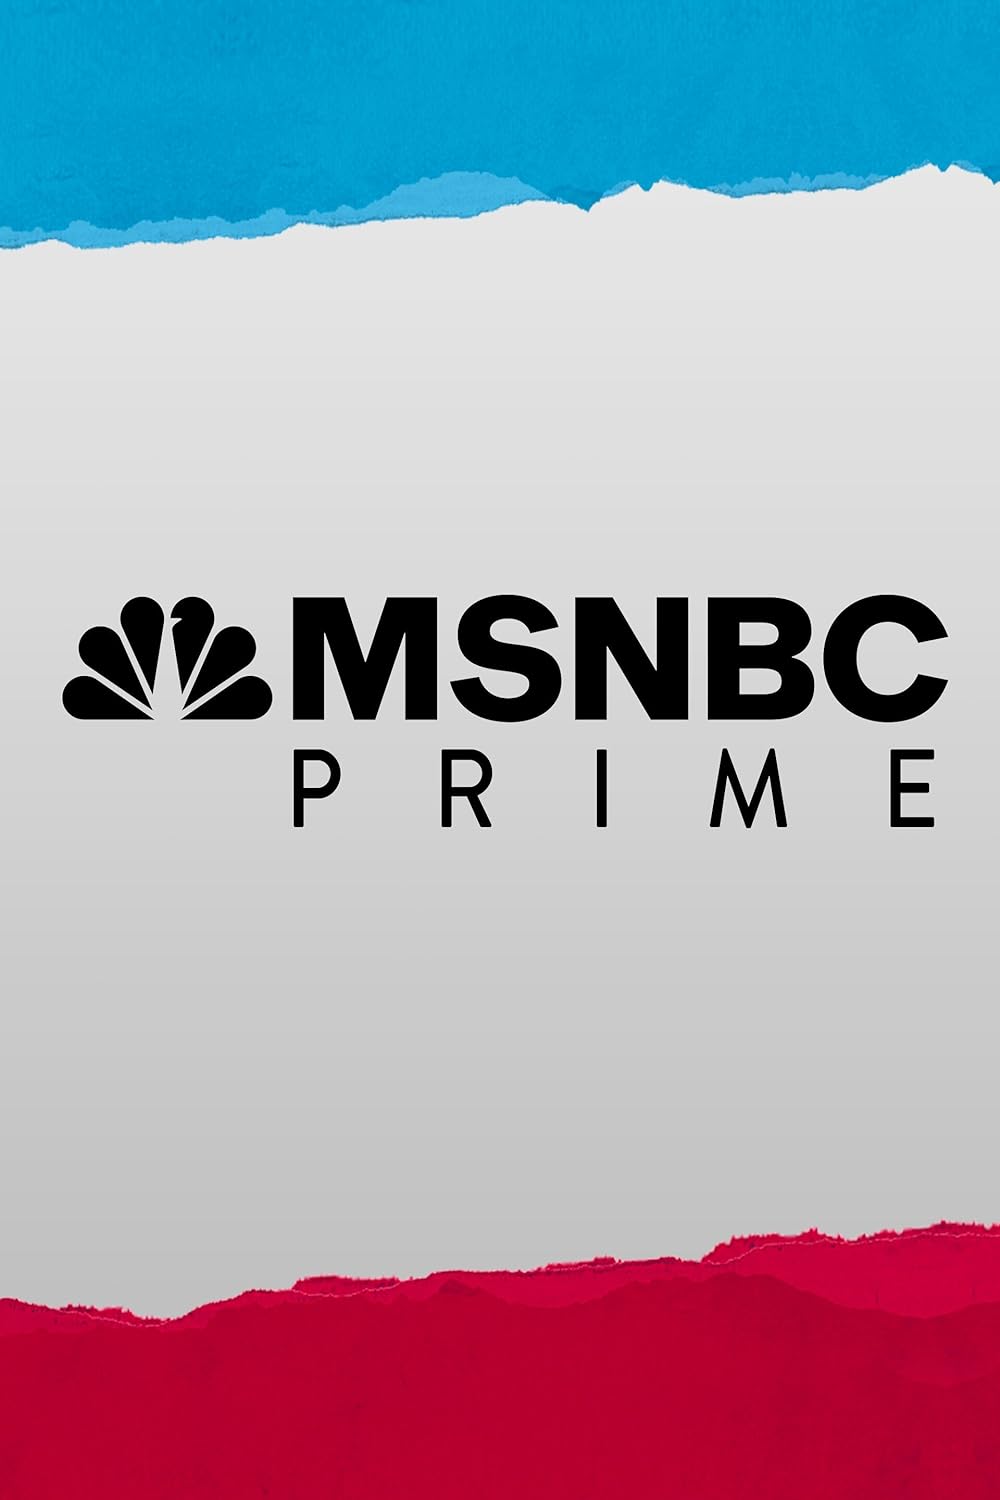 MSNBC Prime